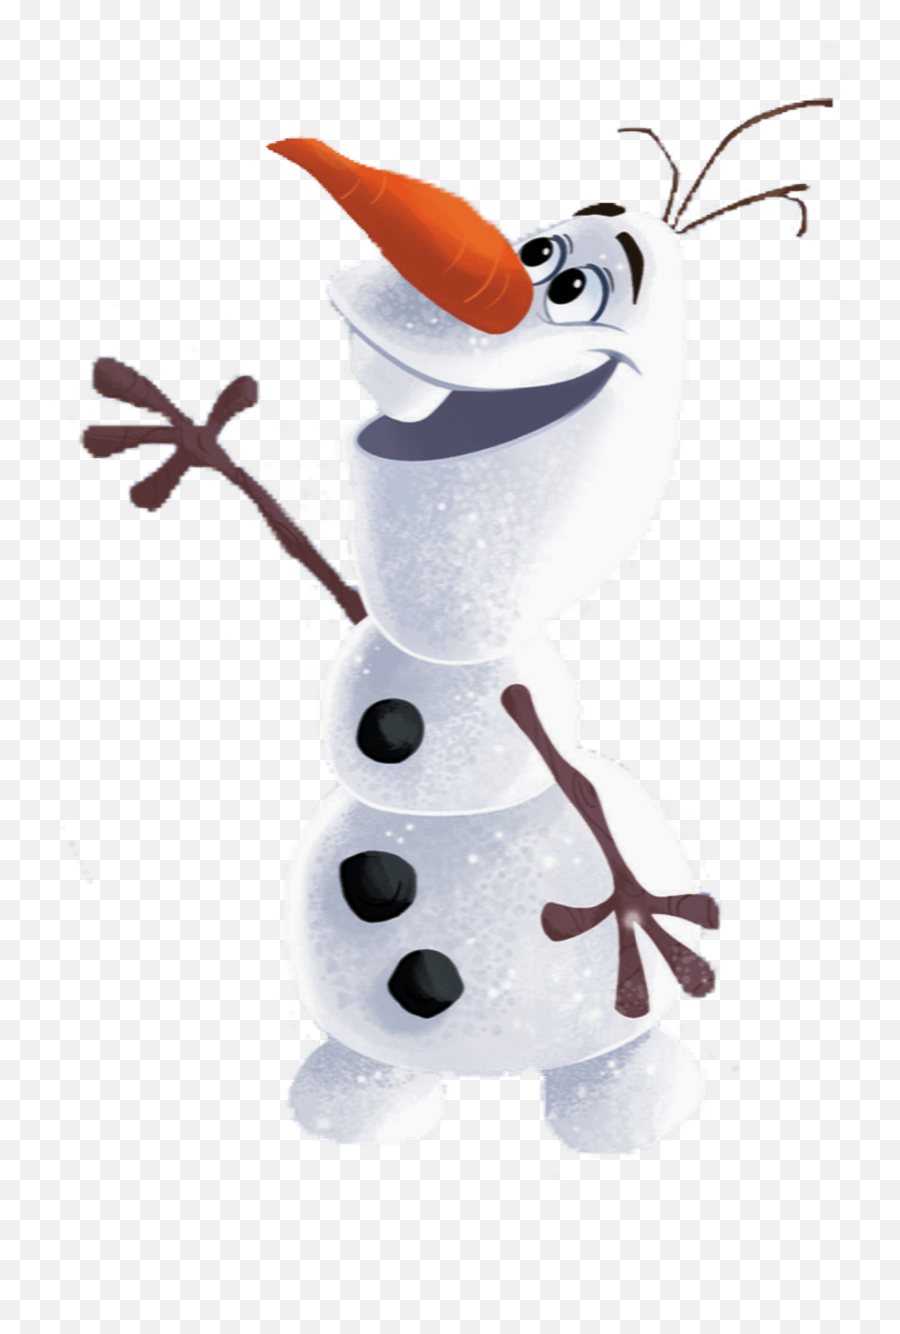 Olaf Free Png Image - Transparent Background Olaf Frozen 2 Png Emoji,Olaf Png